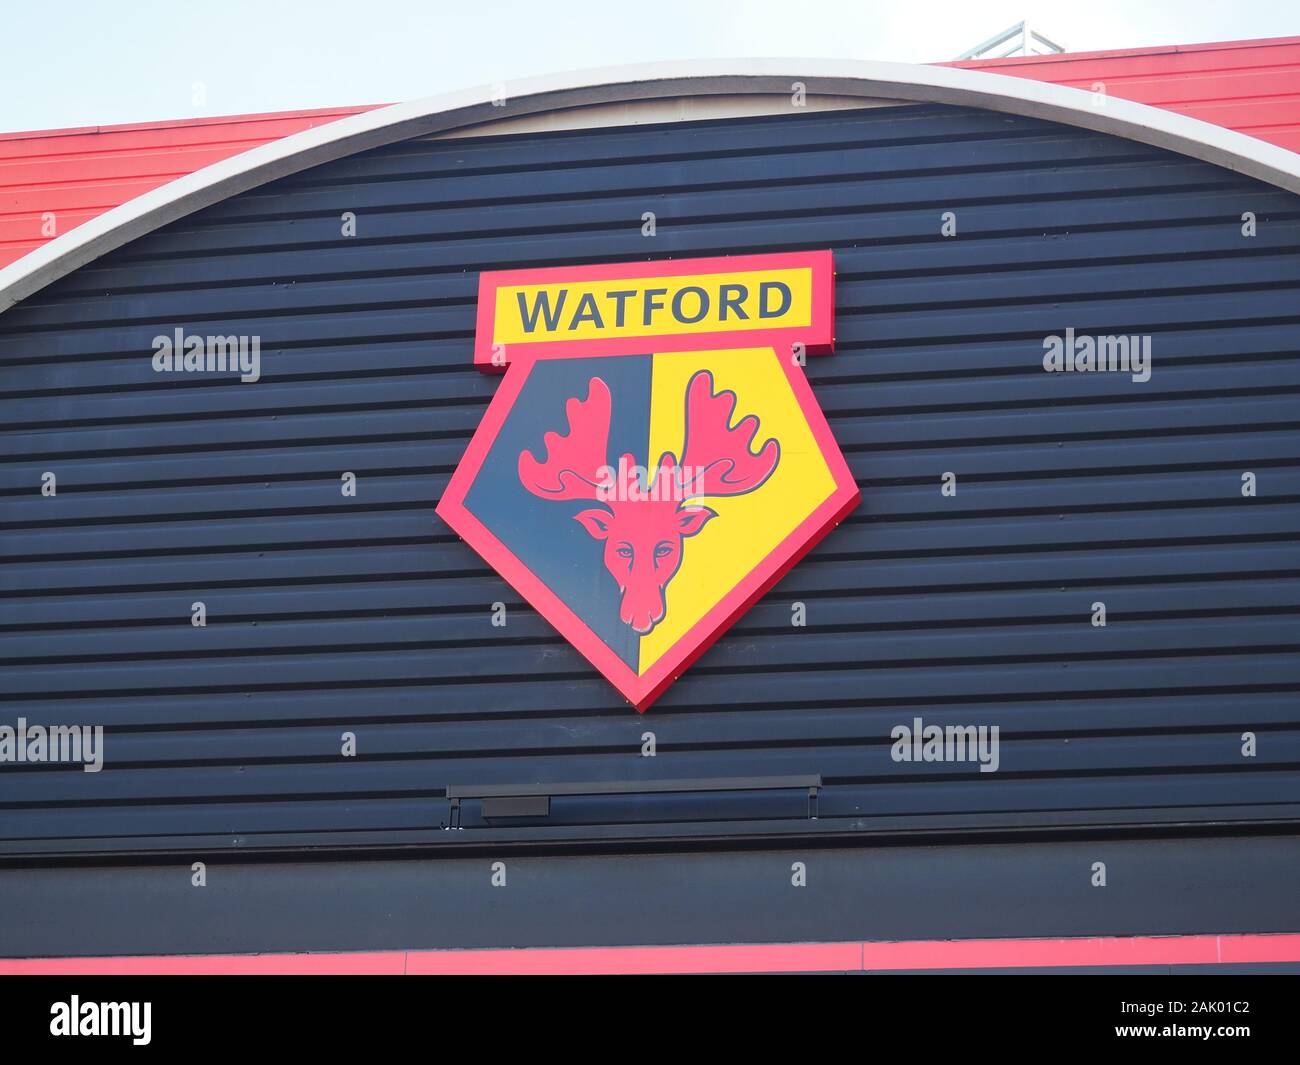 Watford FC sign at Vicarage Road - Watford Stock Photo